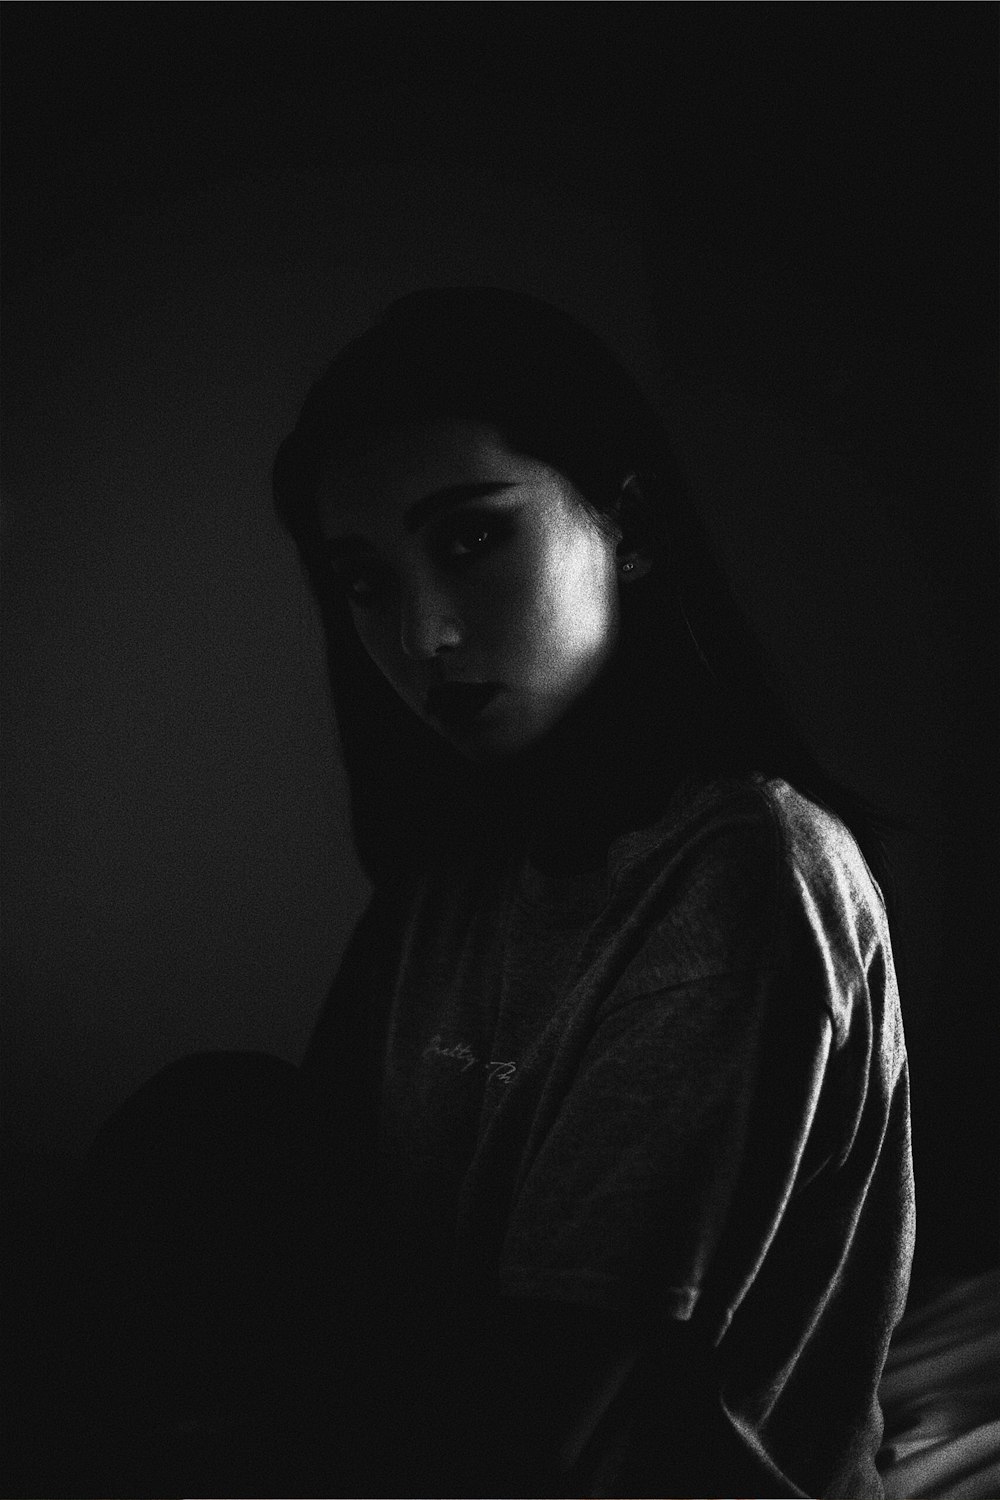 fotografia em tons de cinza da mulher dentro do quarto escuro